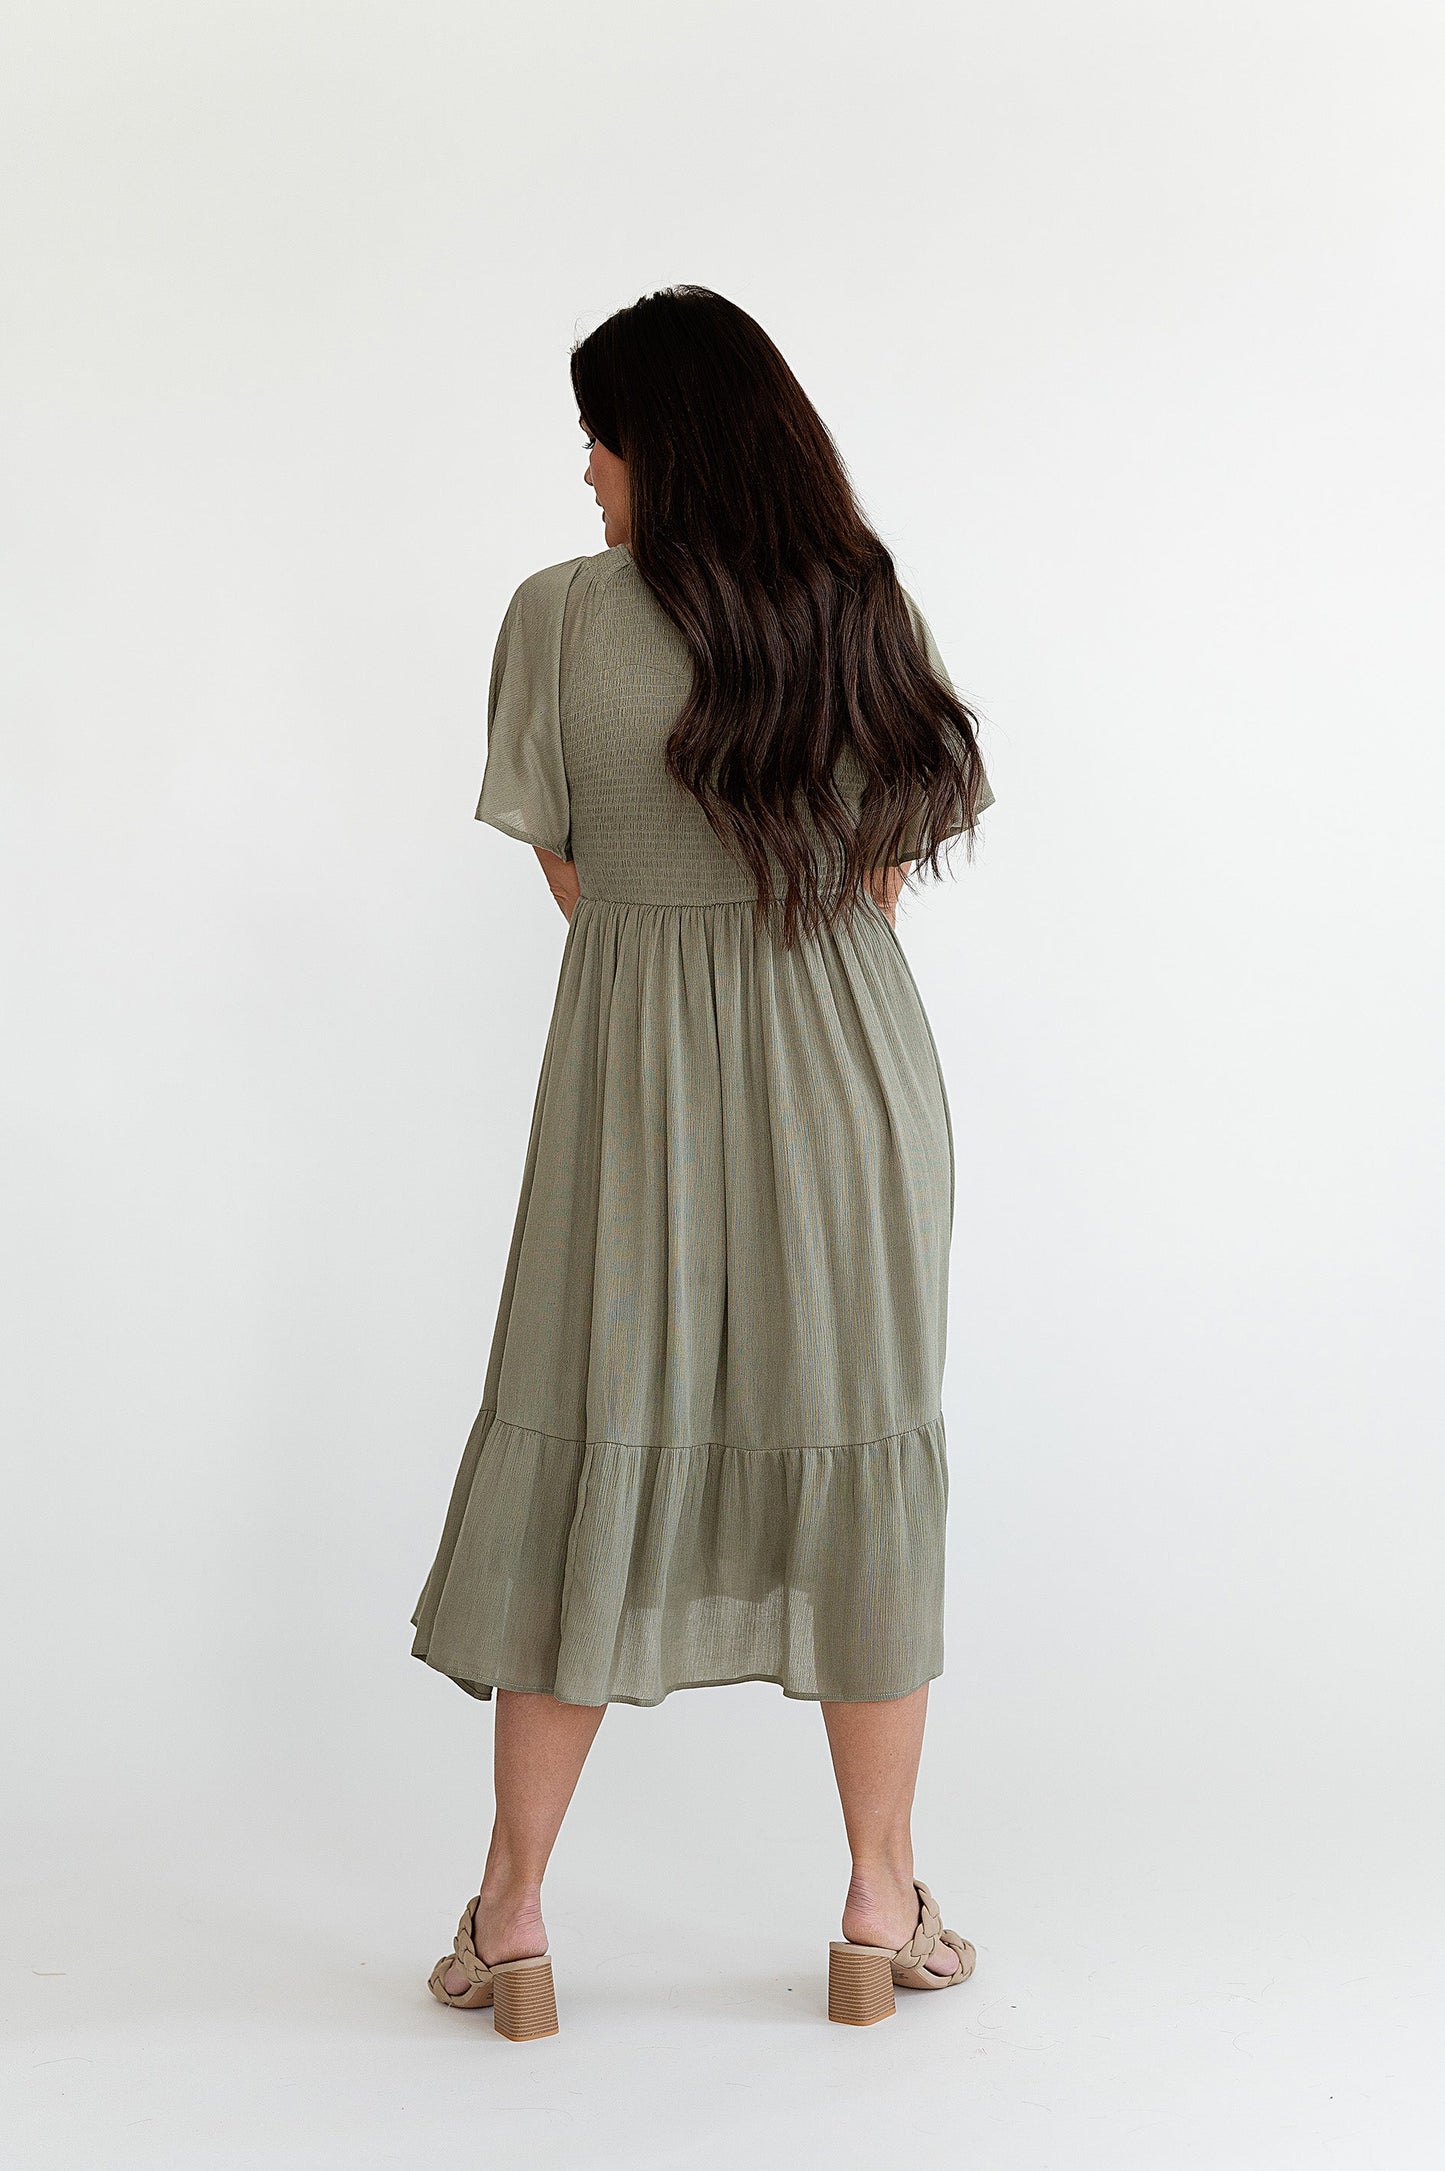 yayaq™-Greta Dress in Olive